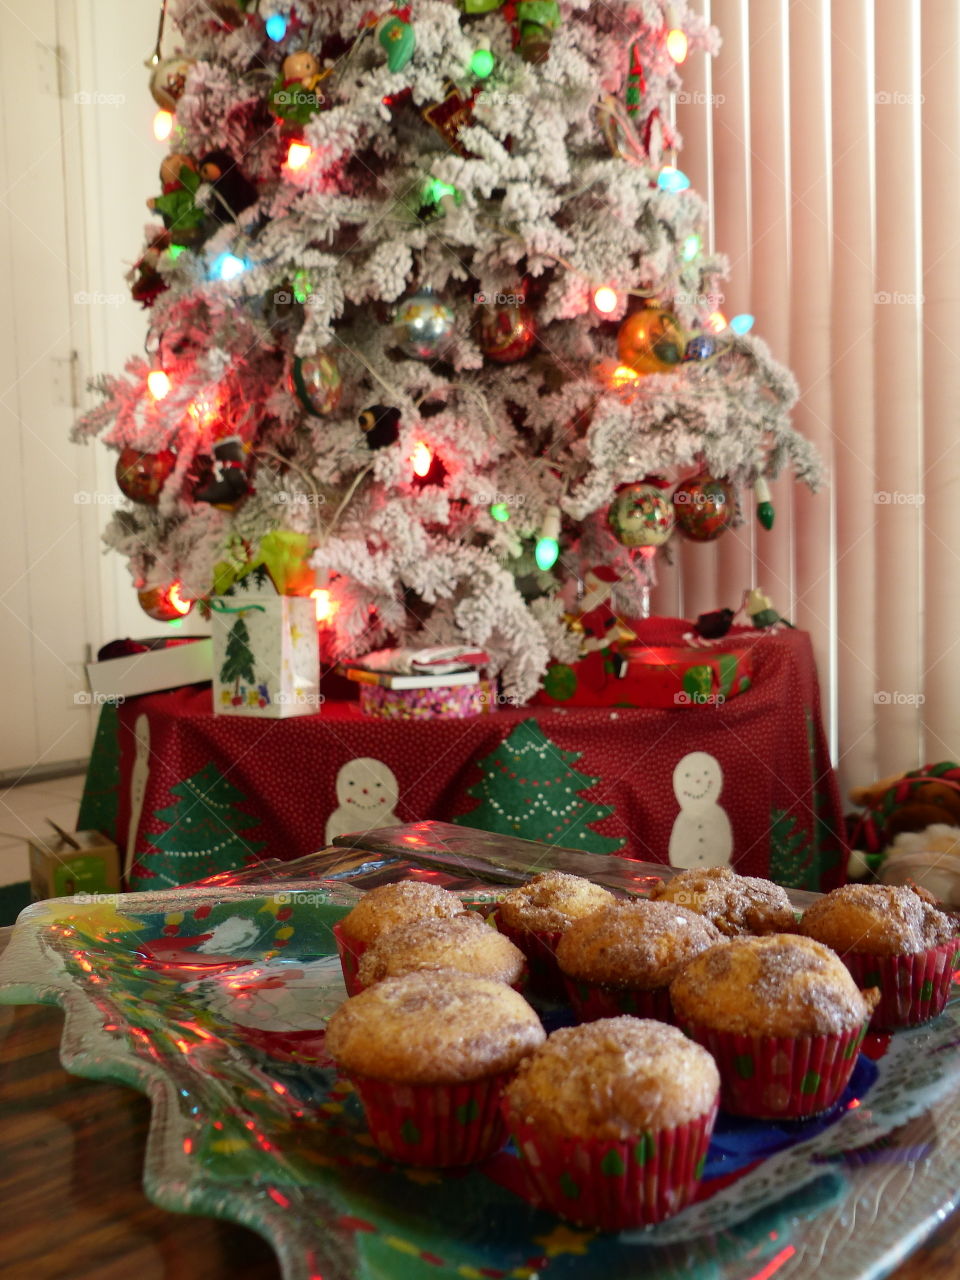 Homemade treats by the Christmas tree 